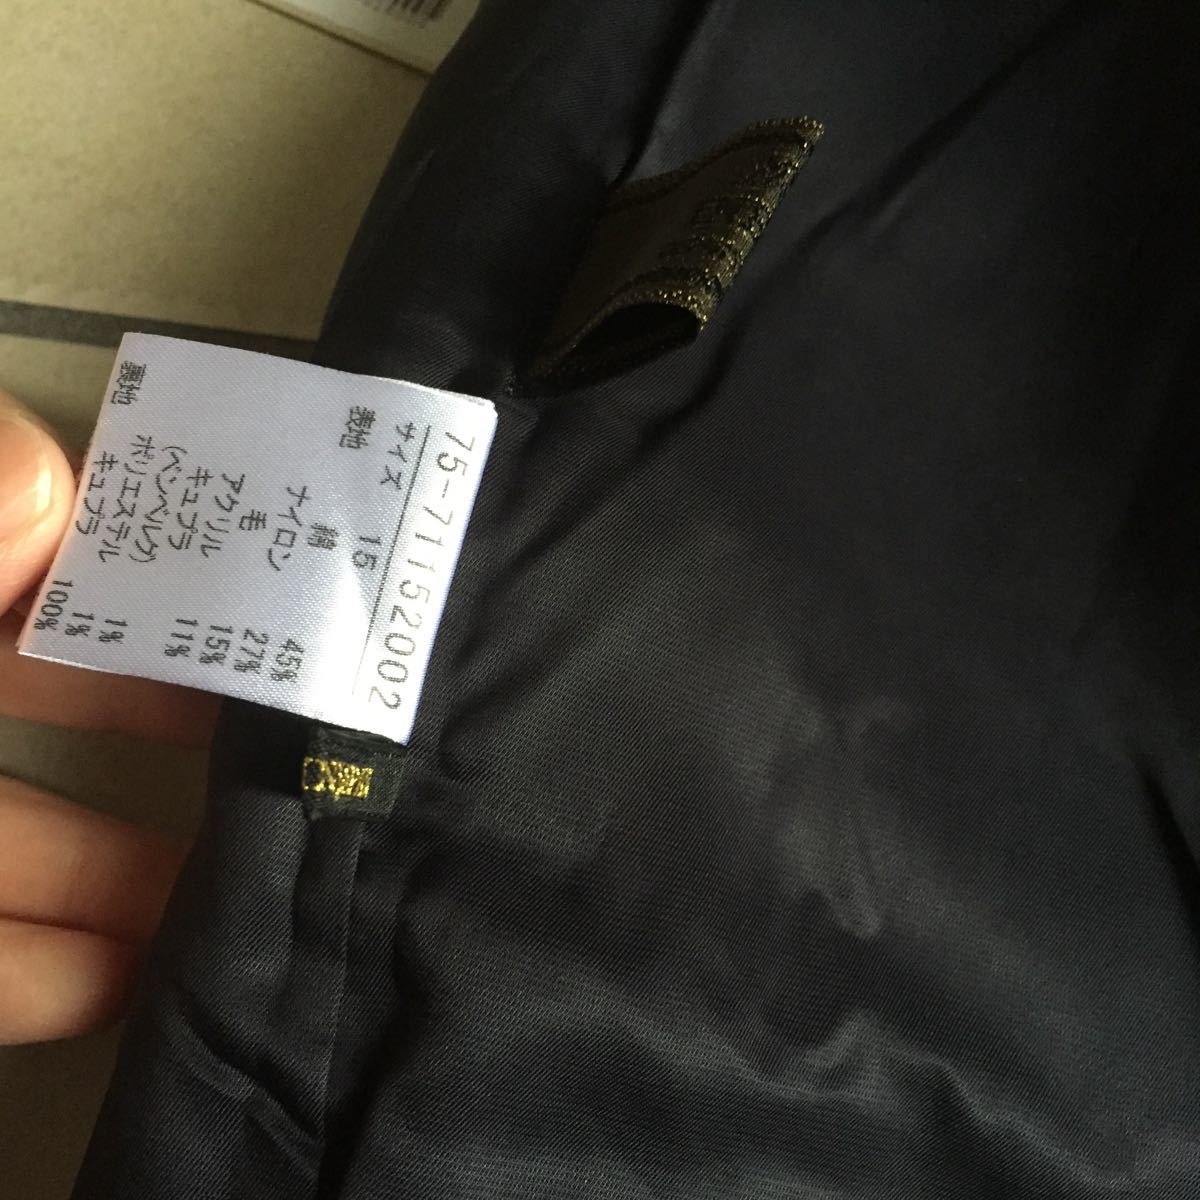  новый товар бирка не прибывший INED Ined довольно большой модный твид узкая юбка размер 15 темно-синий сделано в Японии обычная цена,18.000+ налог 